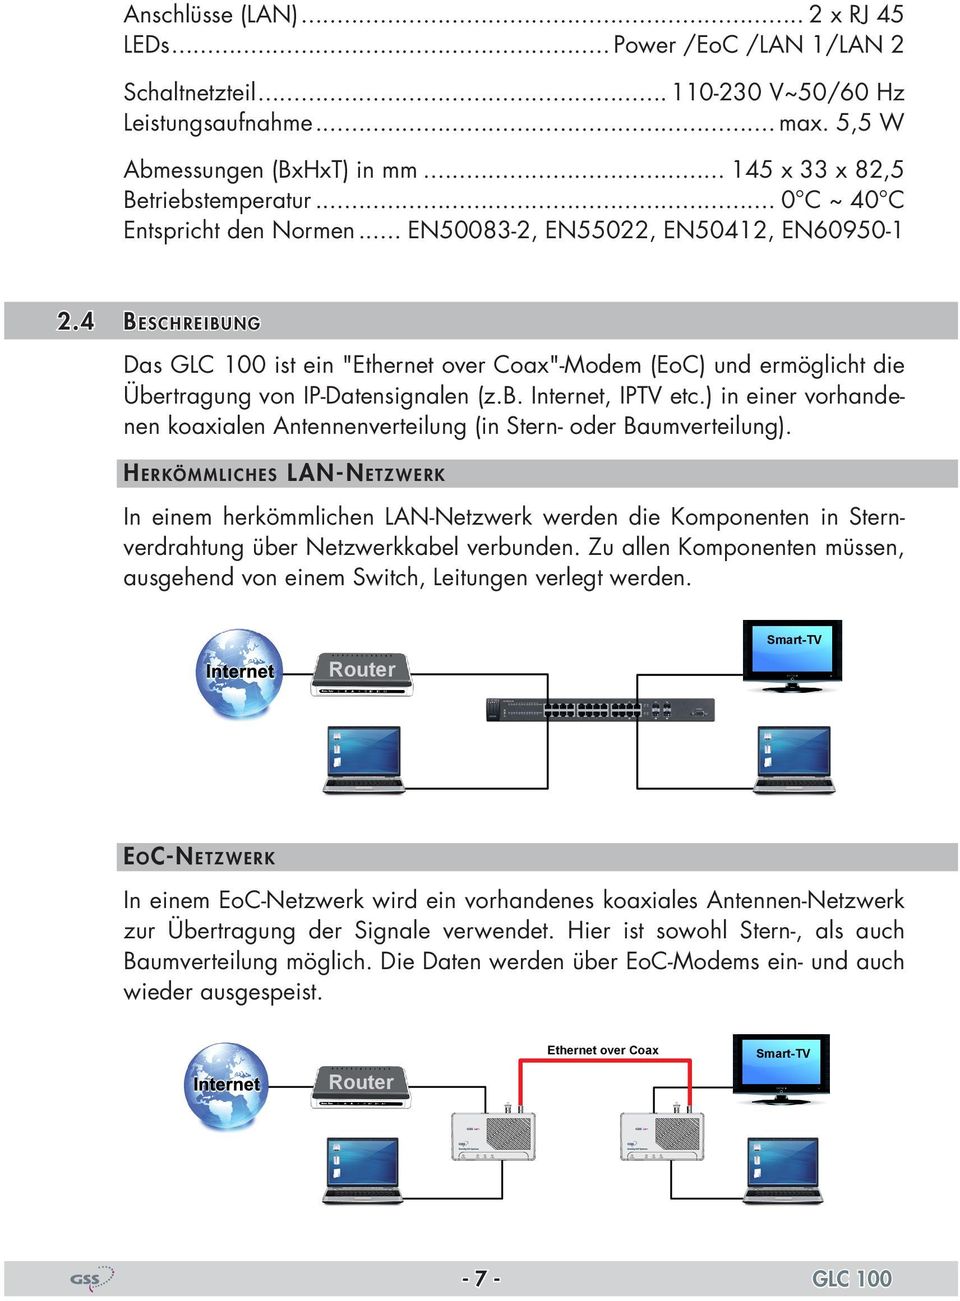 4 Beschreibung Das GLC 100 ist ein "Ethernet over Coax"-Modem (EoC) und ermöglicht die Übertragung von IP-Datensignalen (z.b. Internet, IPTV etc.